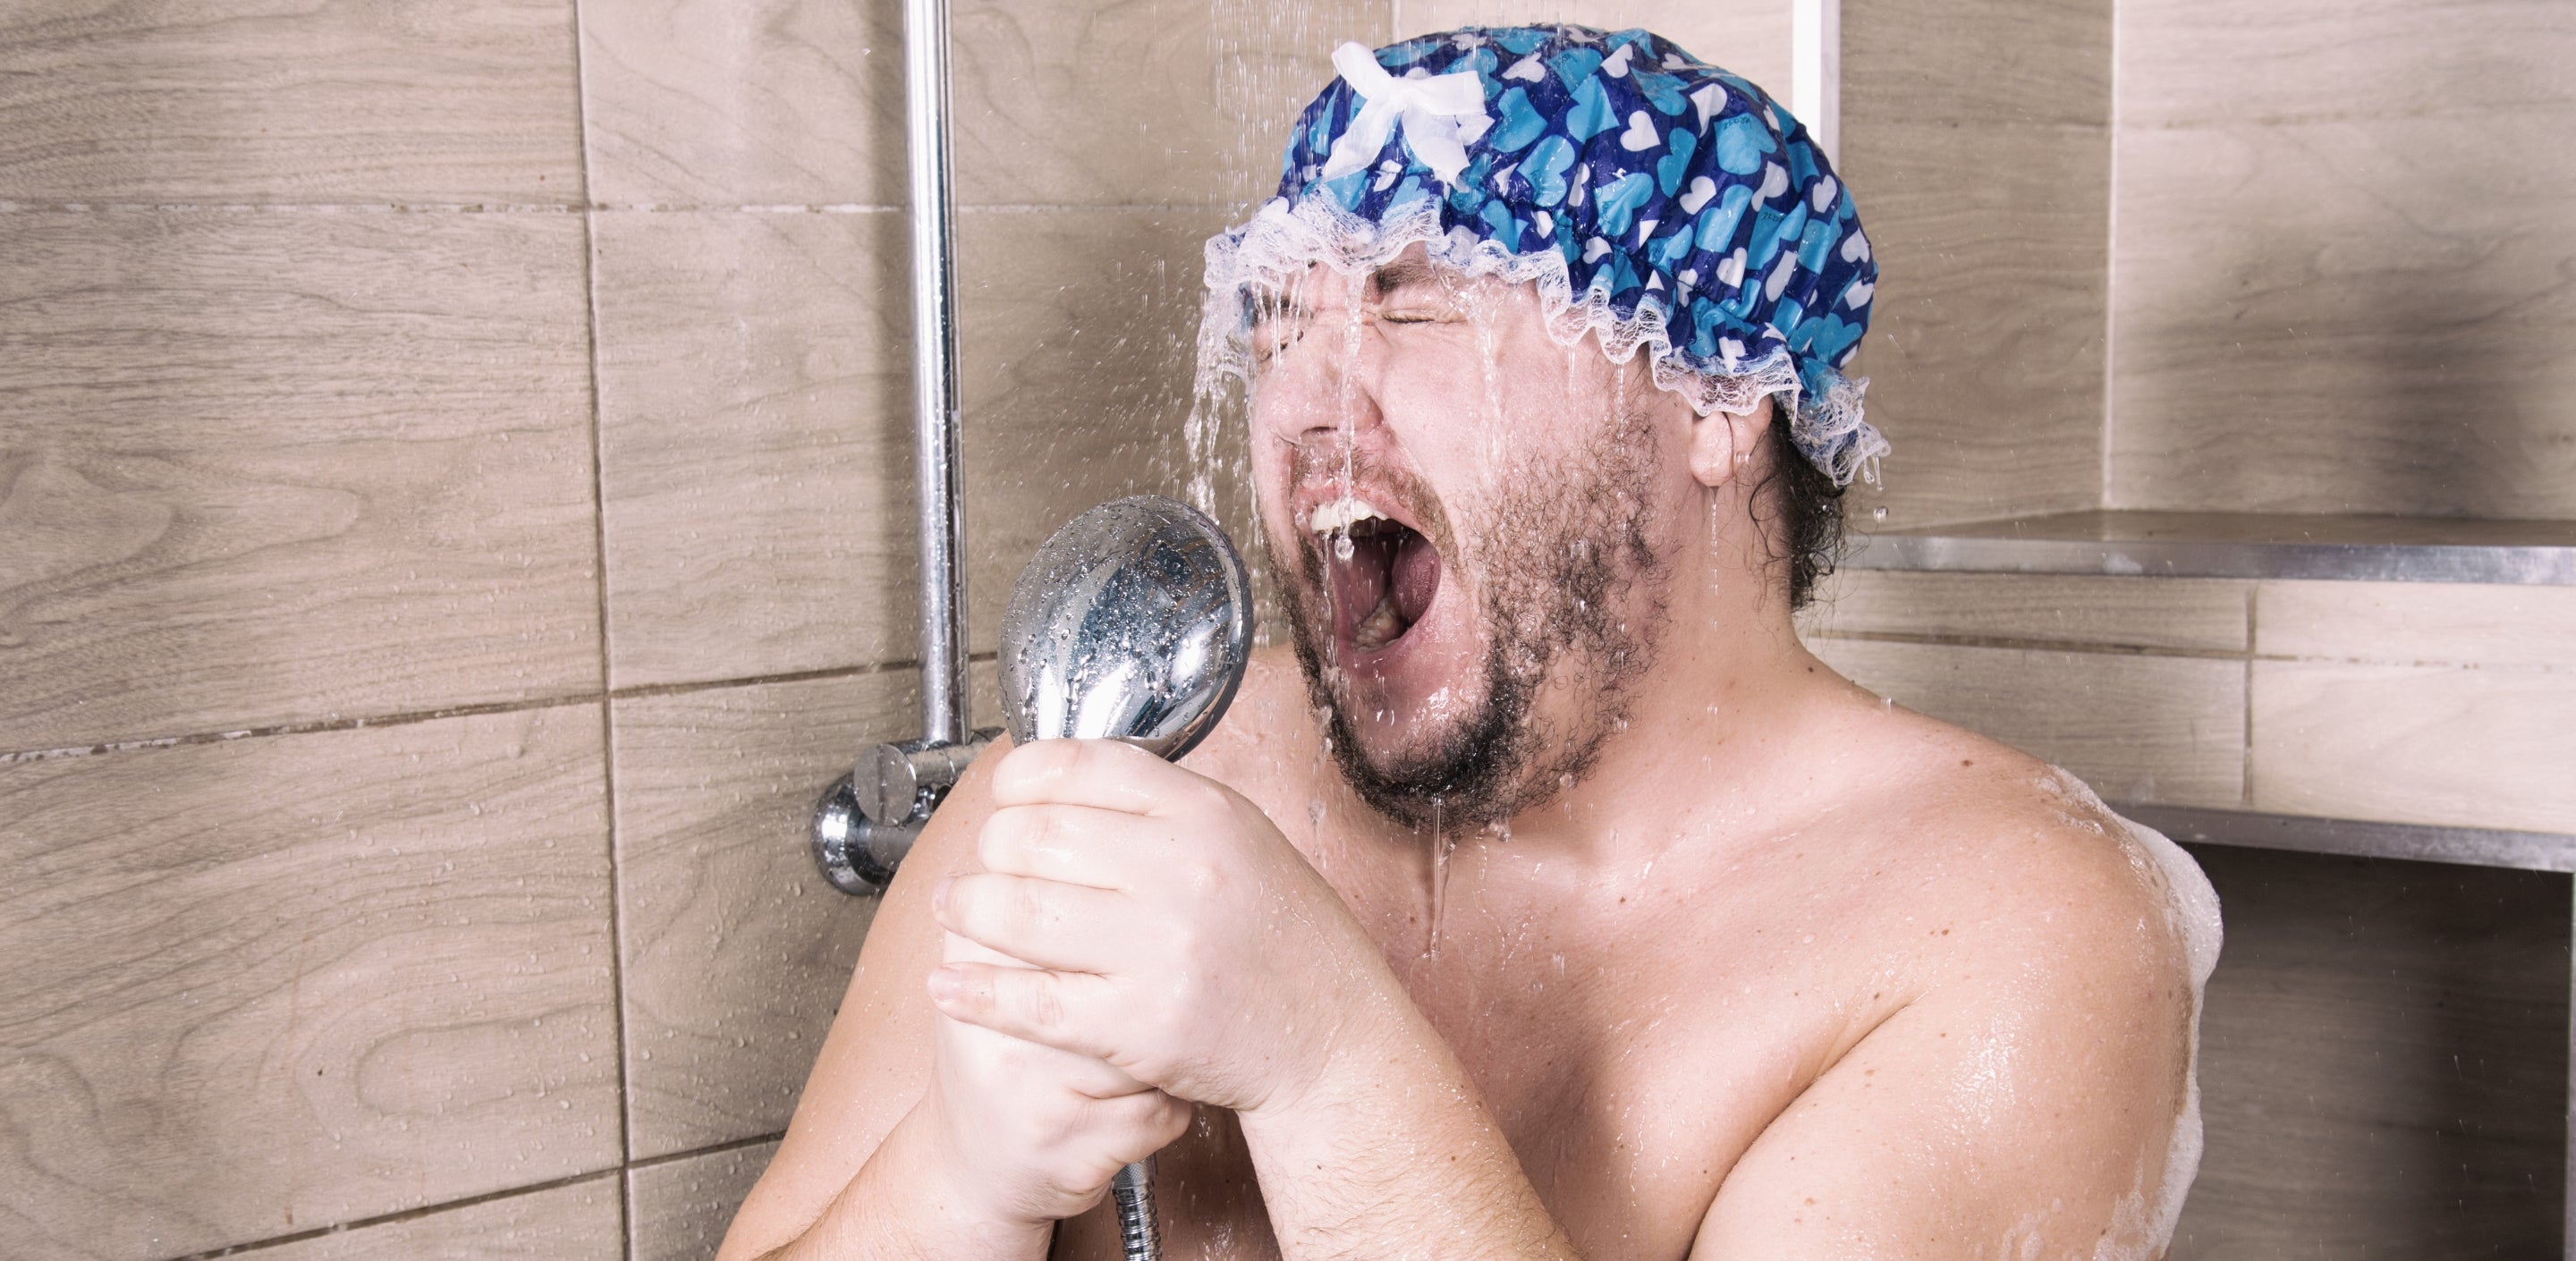 Man Shaving In Shower